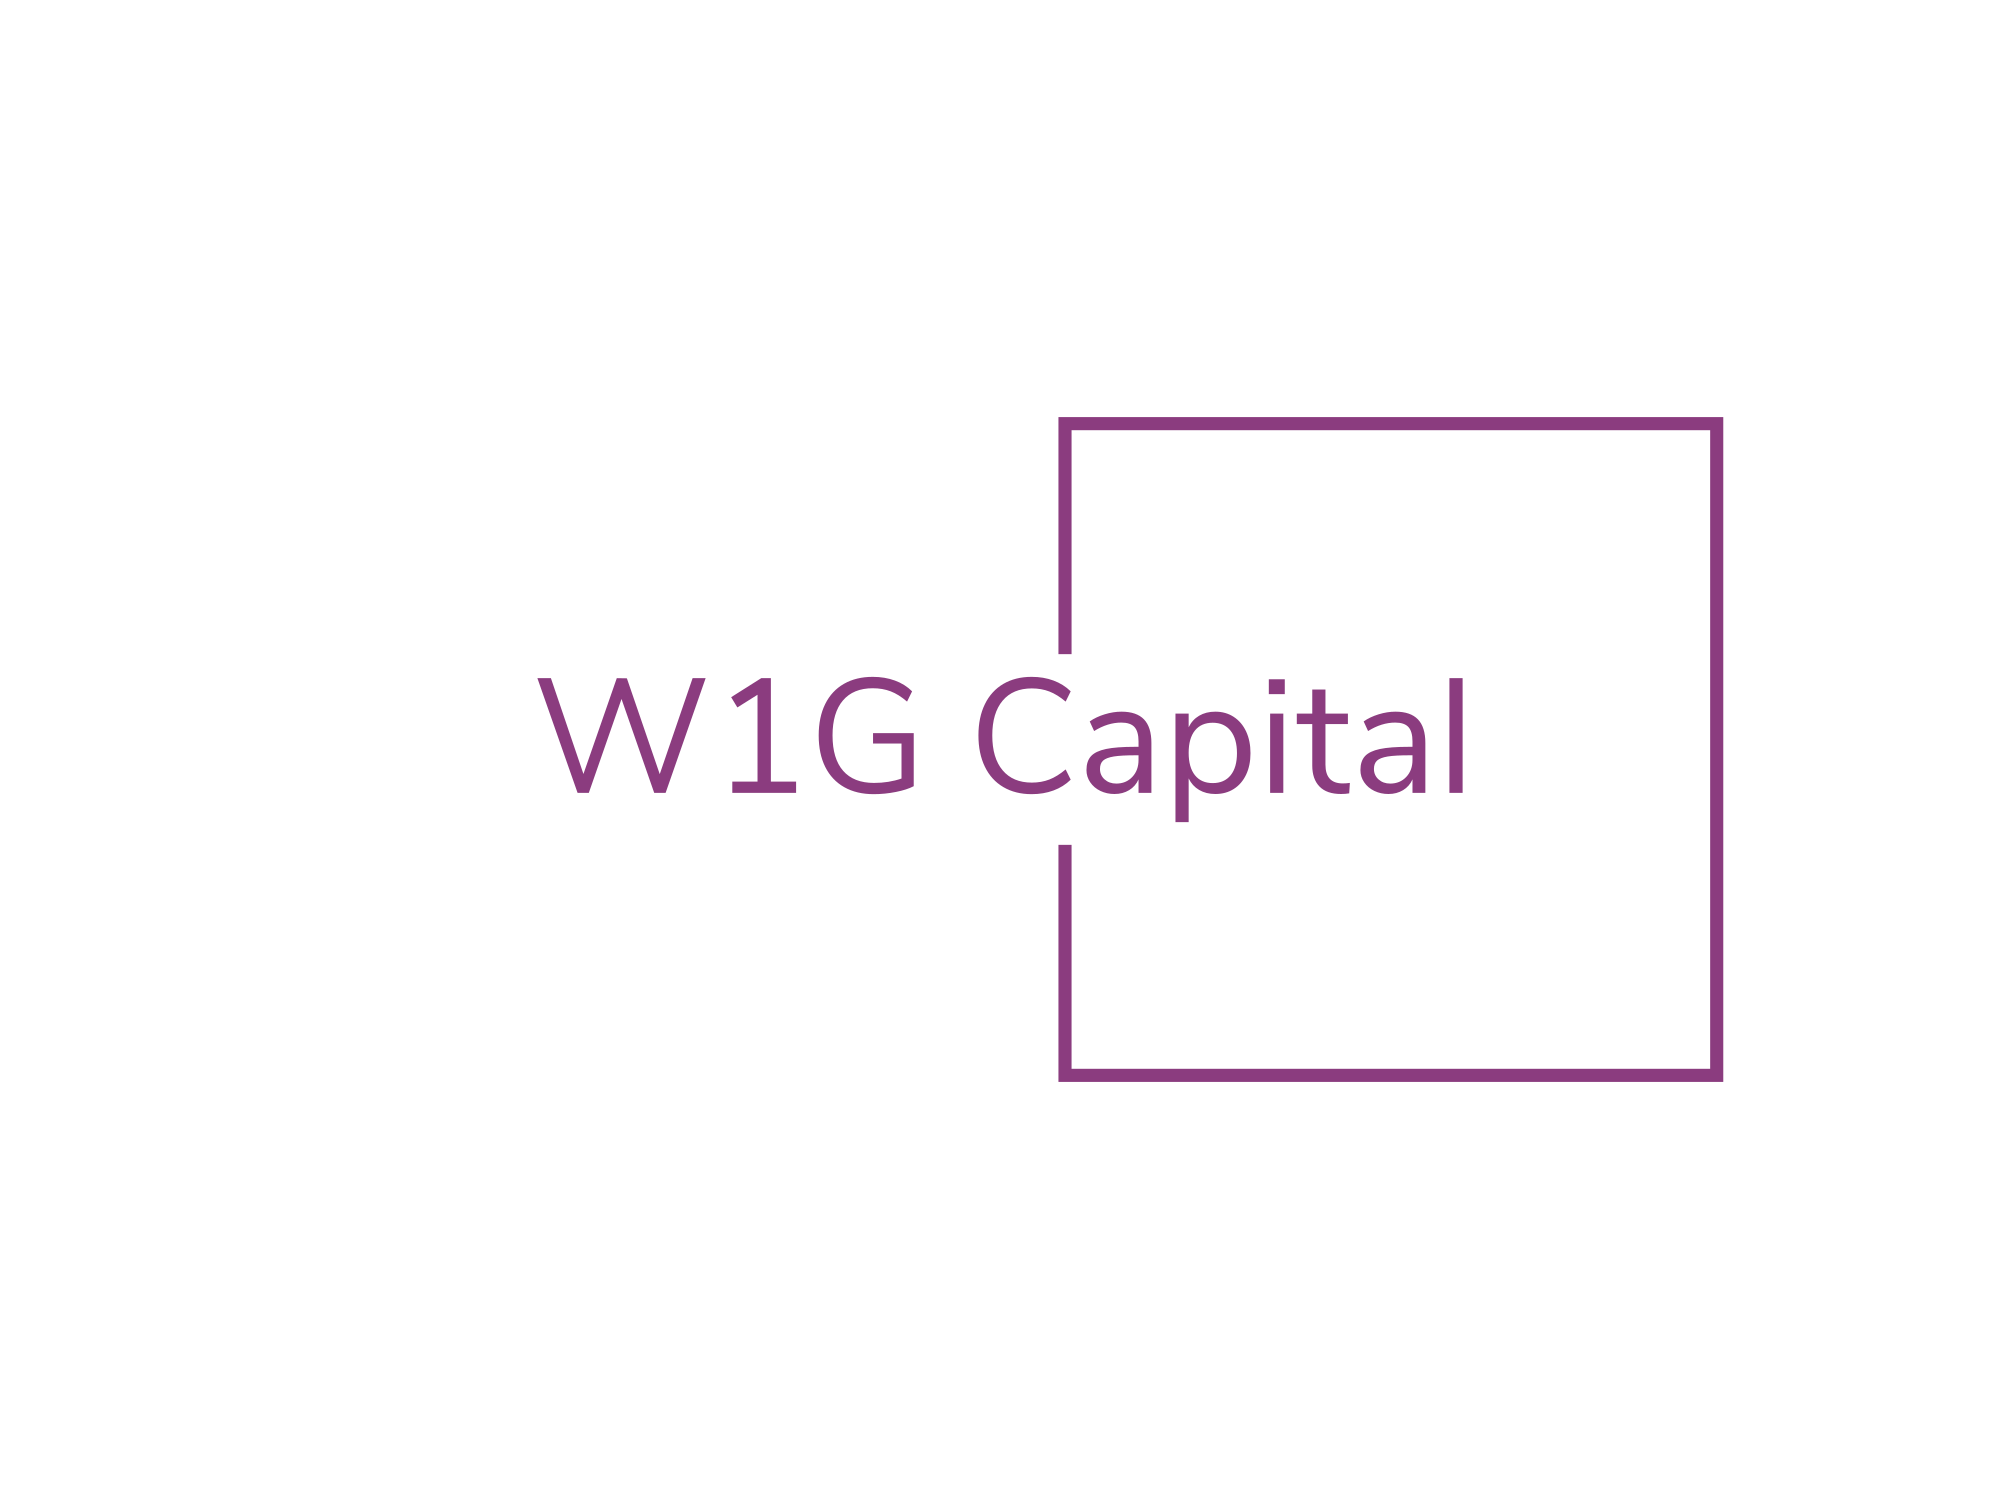 W1G Capital